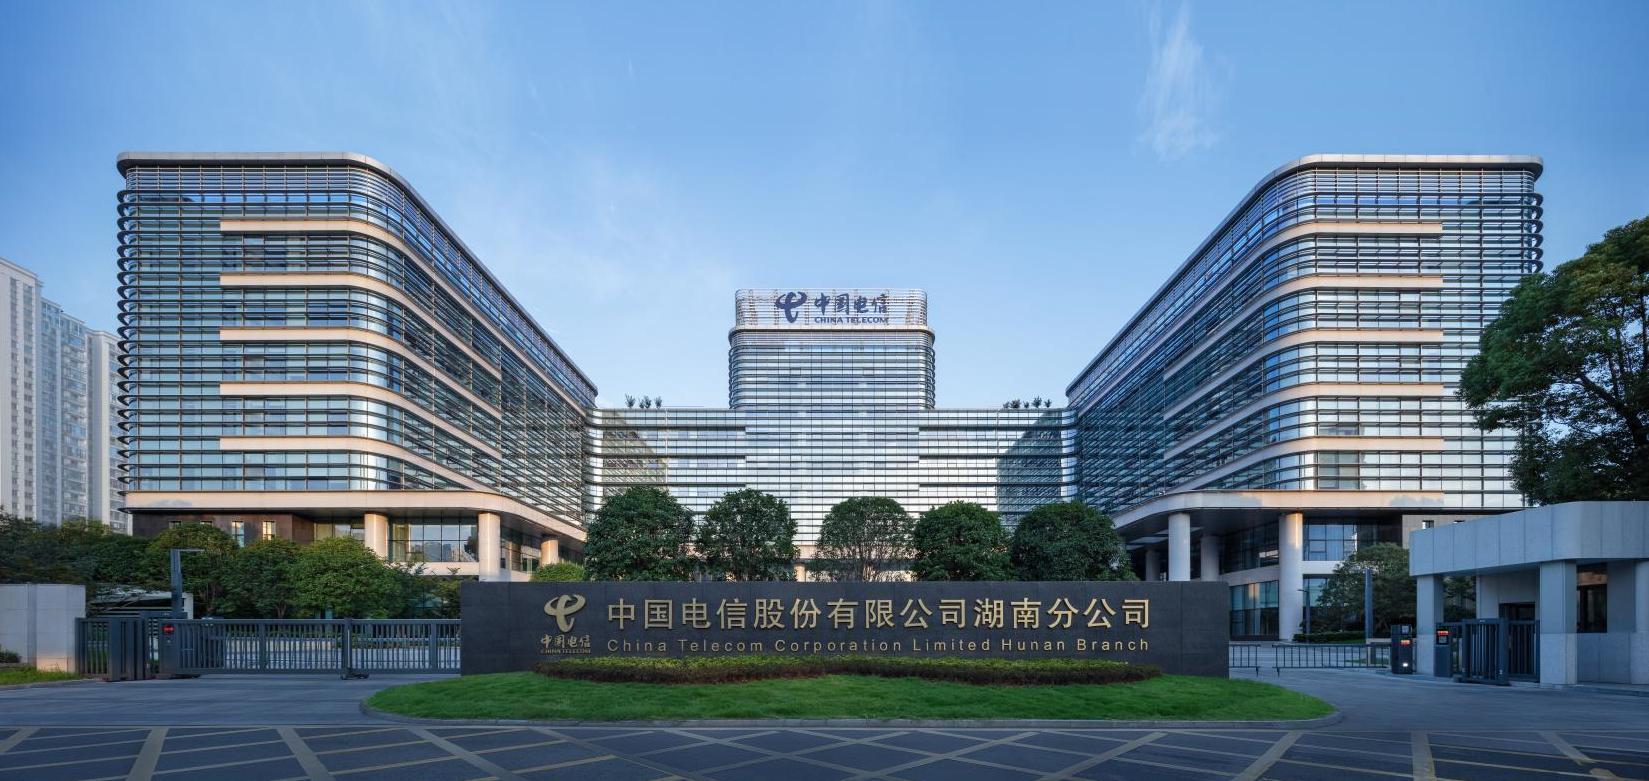 公司承建的湖南信息园（调度大楼、通信机房、地下室、附属楼）工程荣获两项（土建、安装）中国建设工程鲁班奖